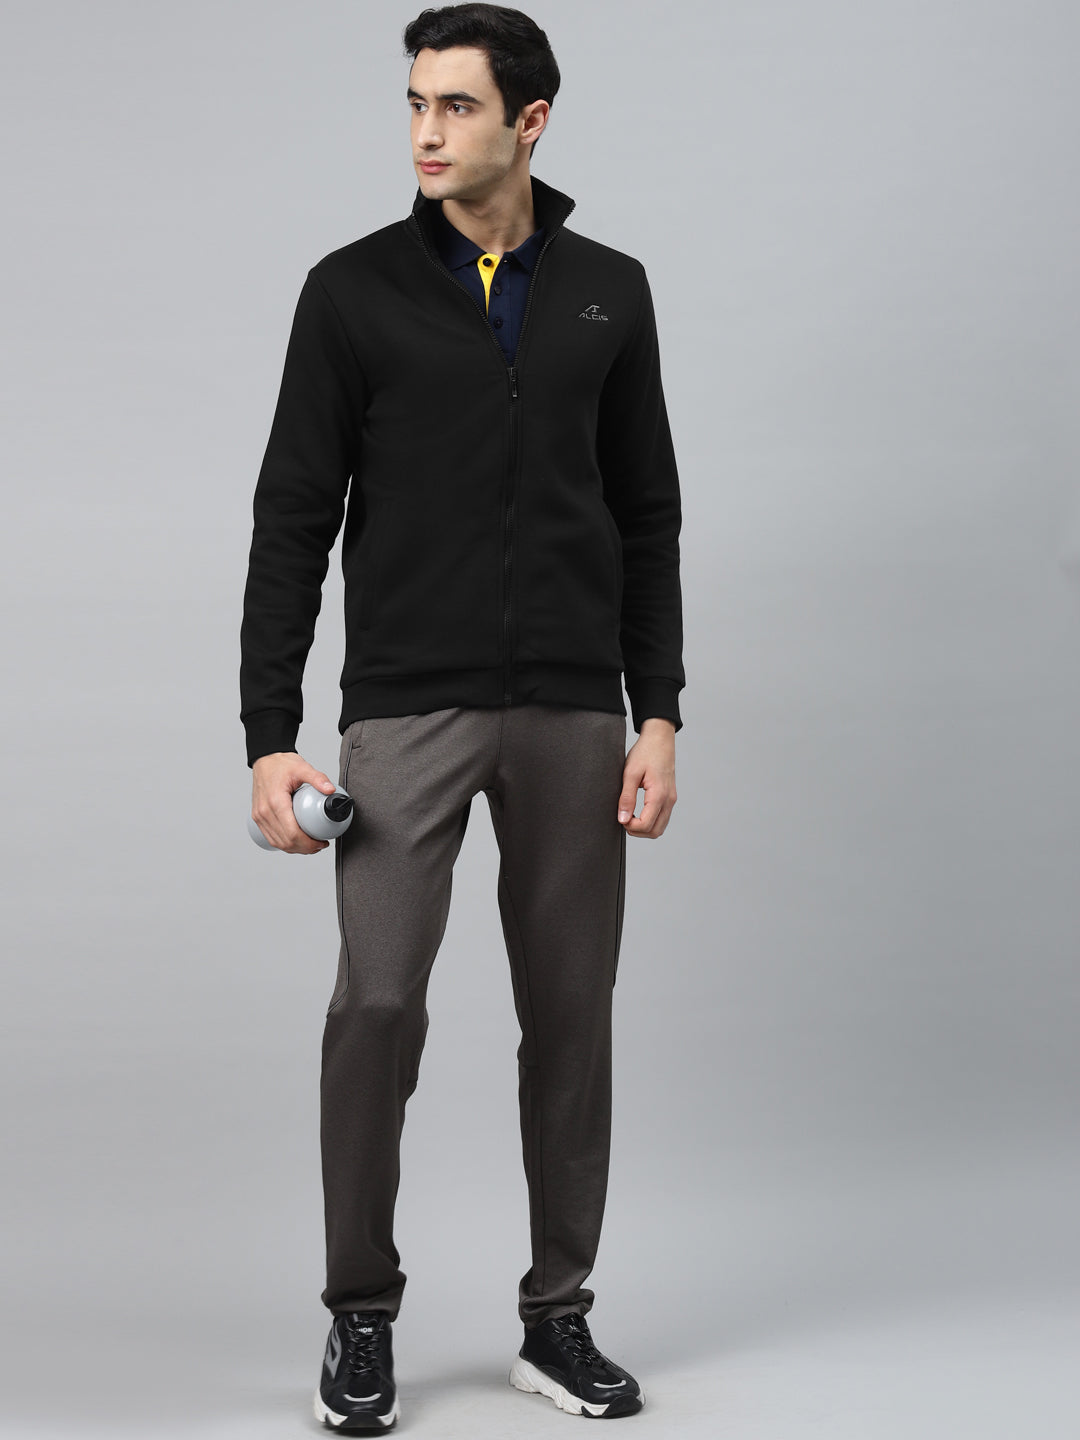 Alcis Men Black Solid Open-Front Sweatshirt